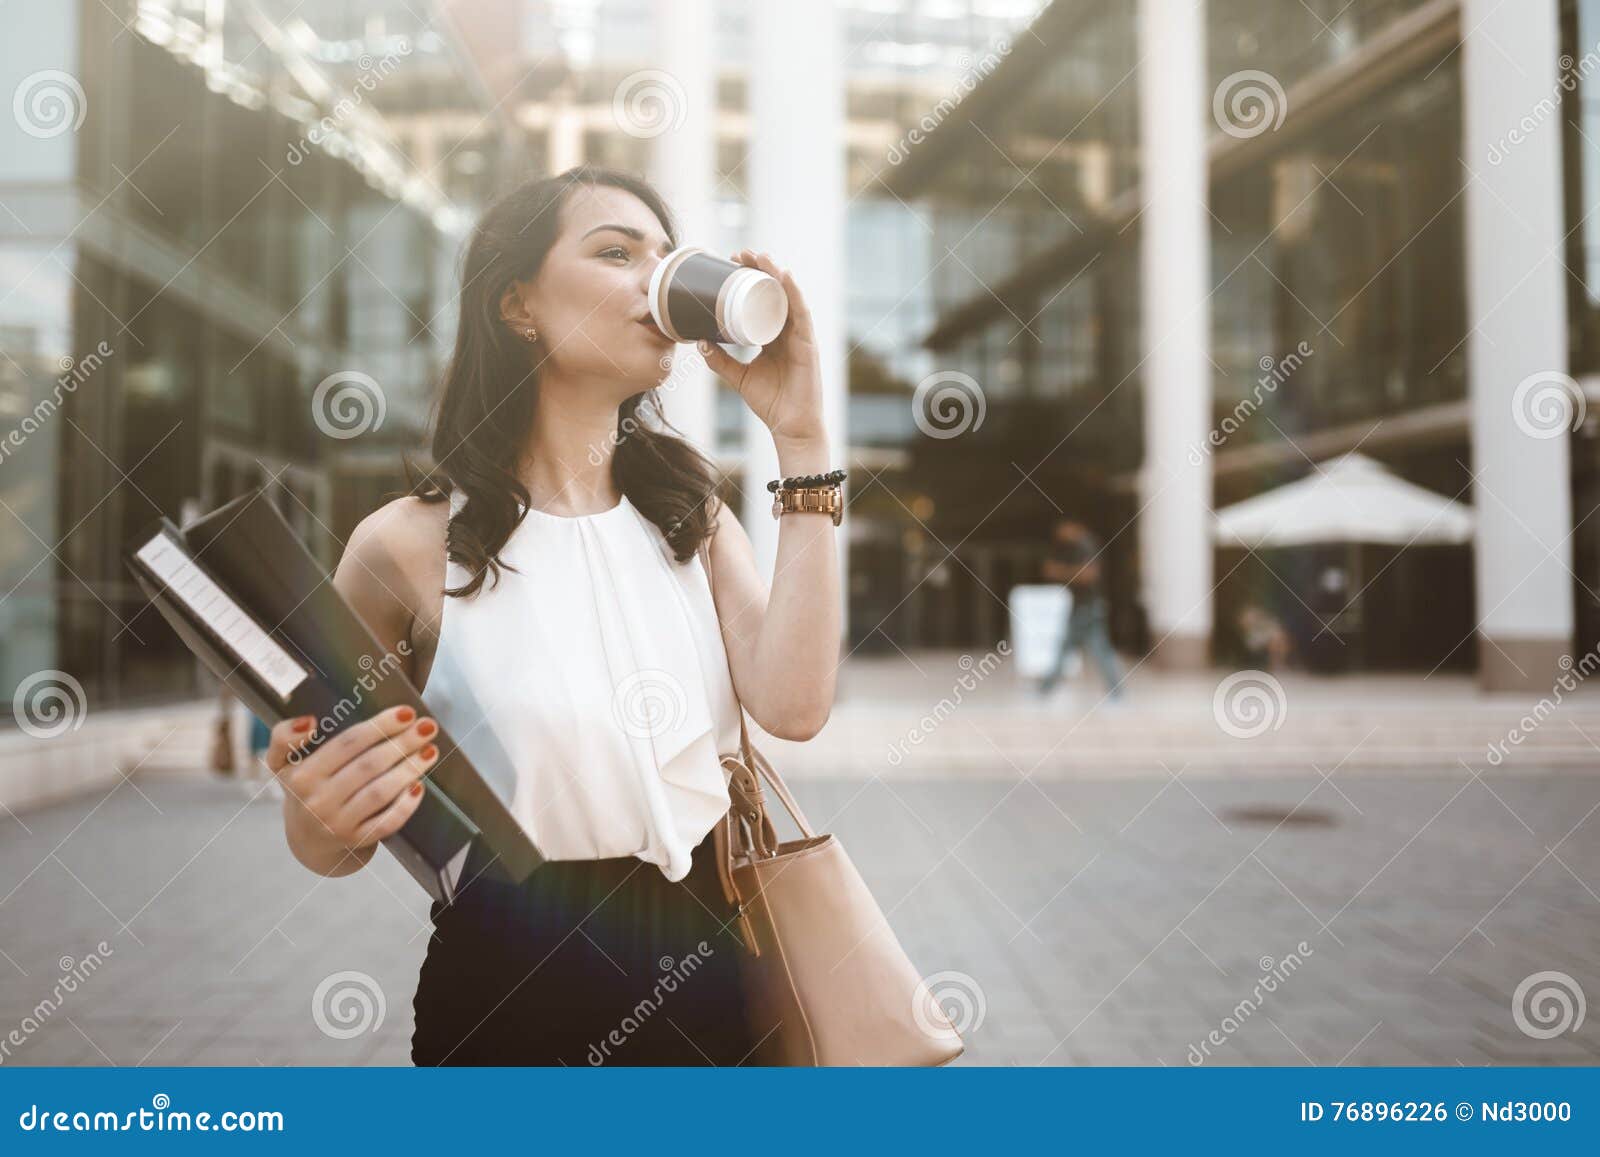 Like woman go. Кофе на ходу девушка. Девушка с кофе на улице. Девушка со стаканчиком. Бизнесвумен с кофе.